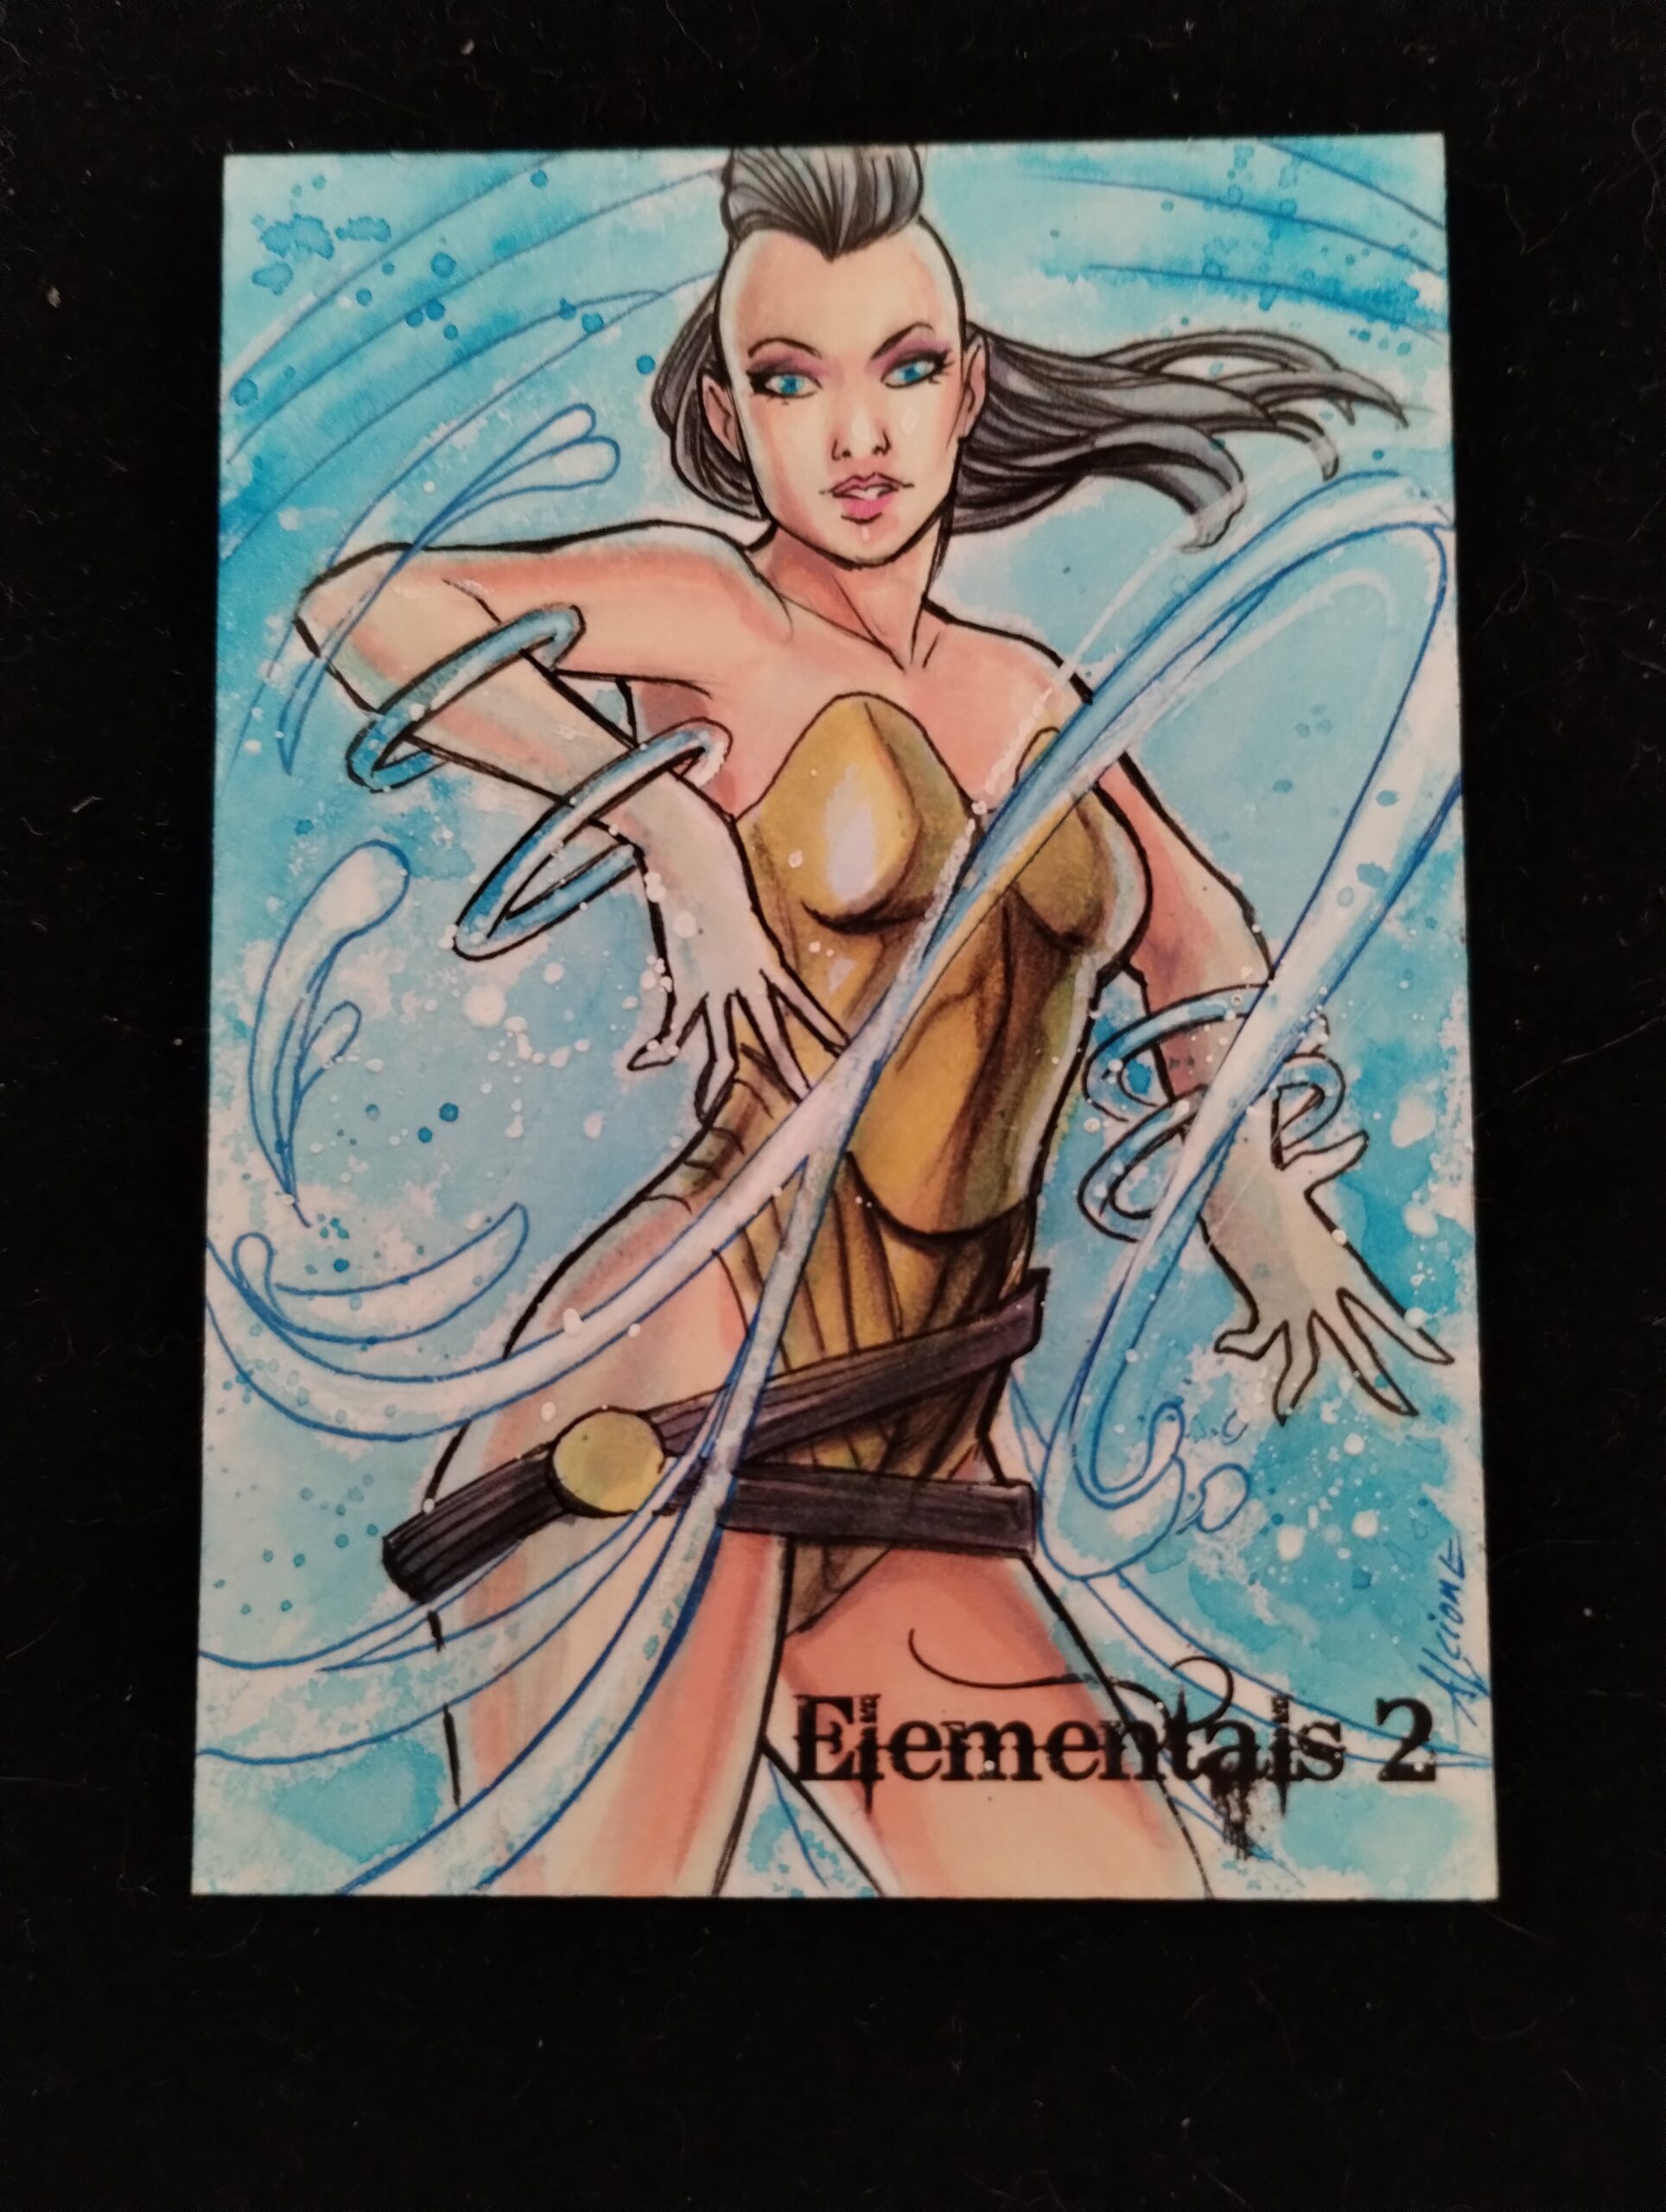 Elementals 2 sketch card by Alicione Silva